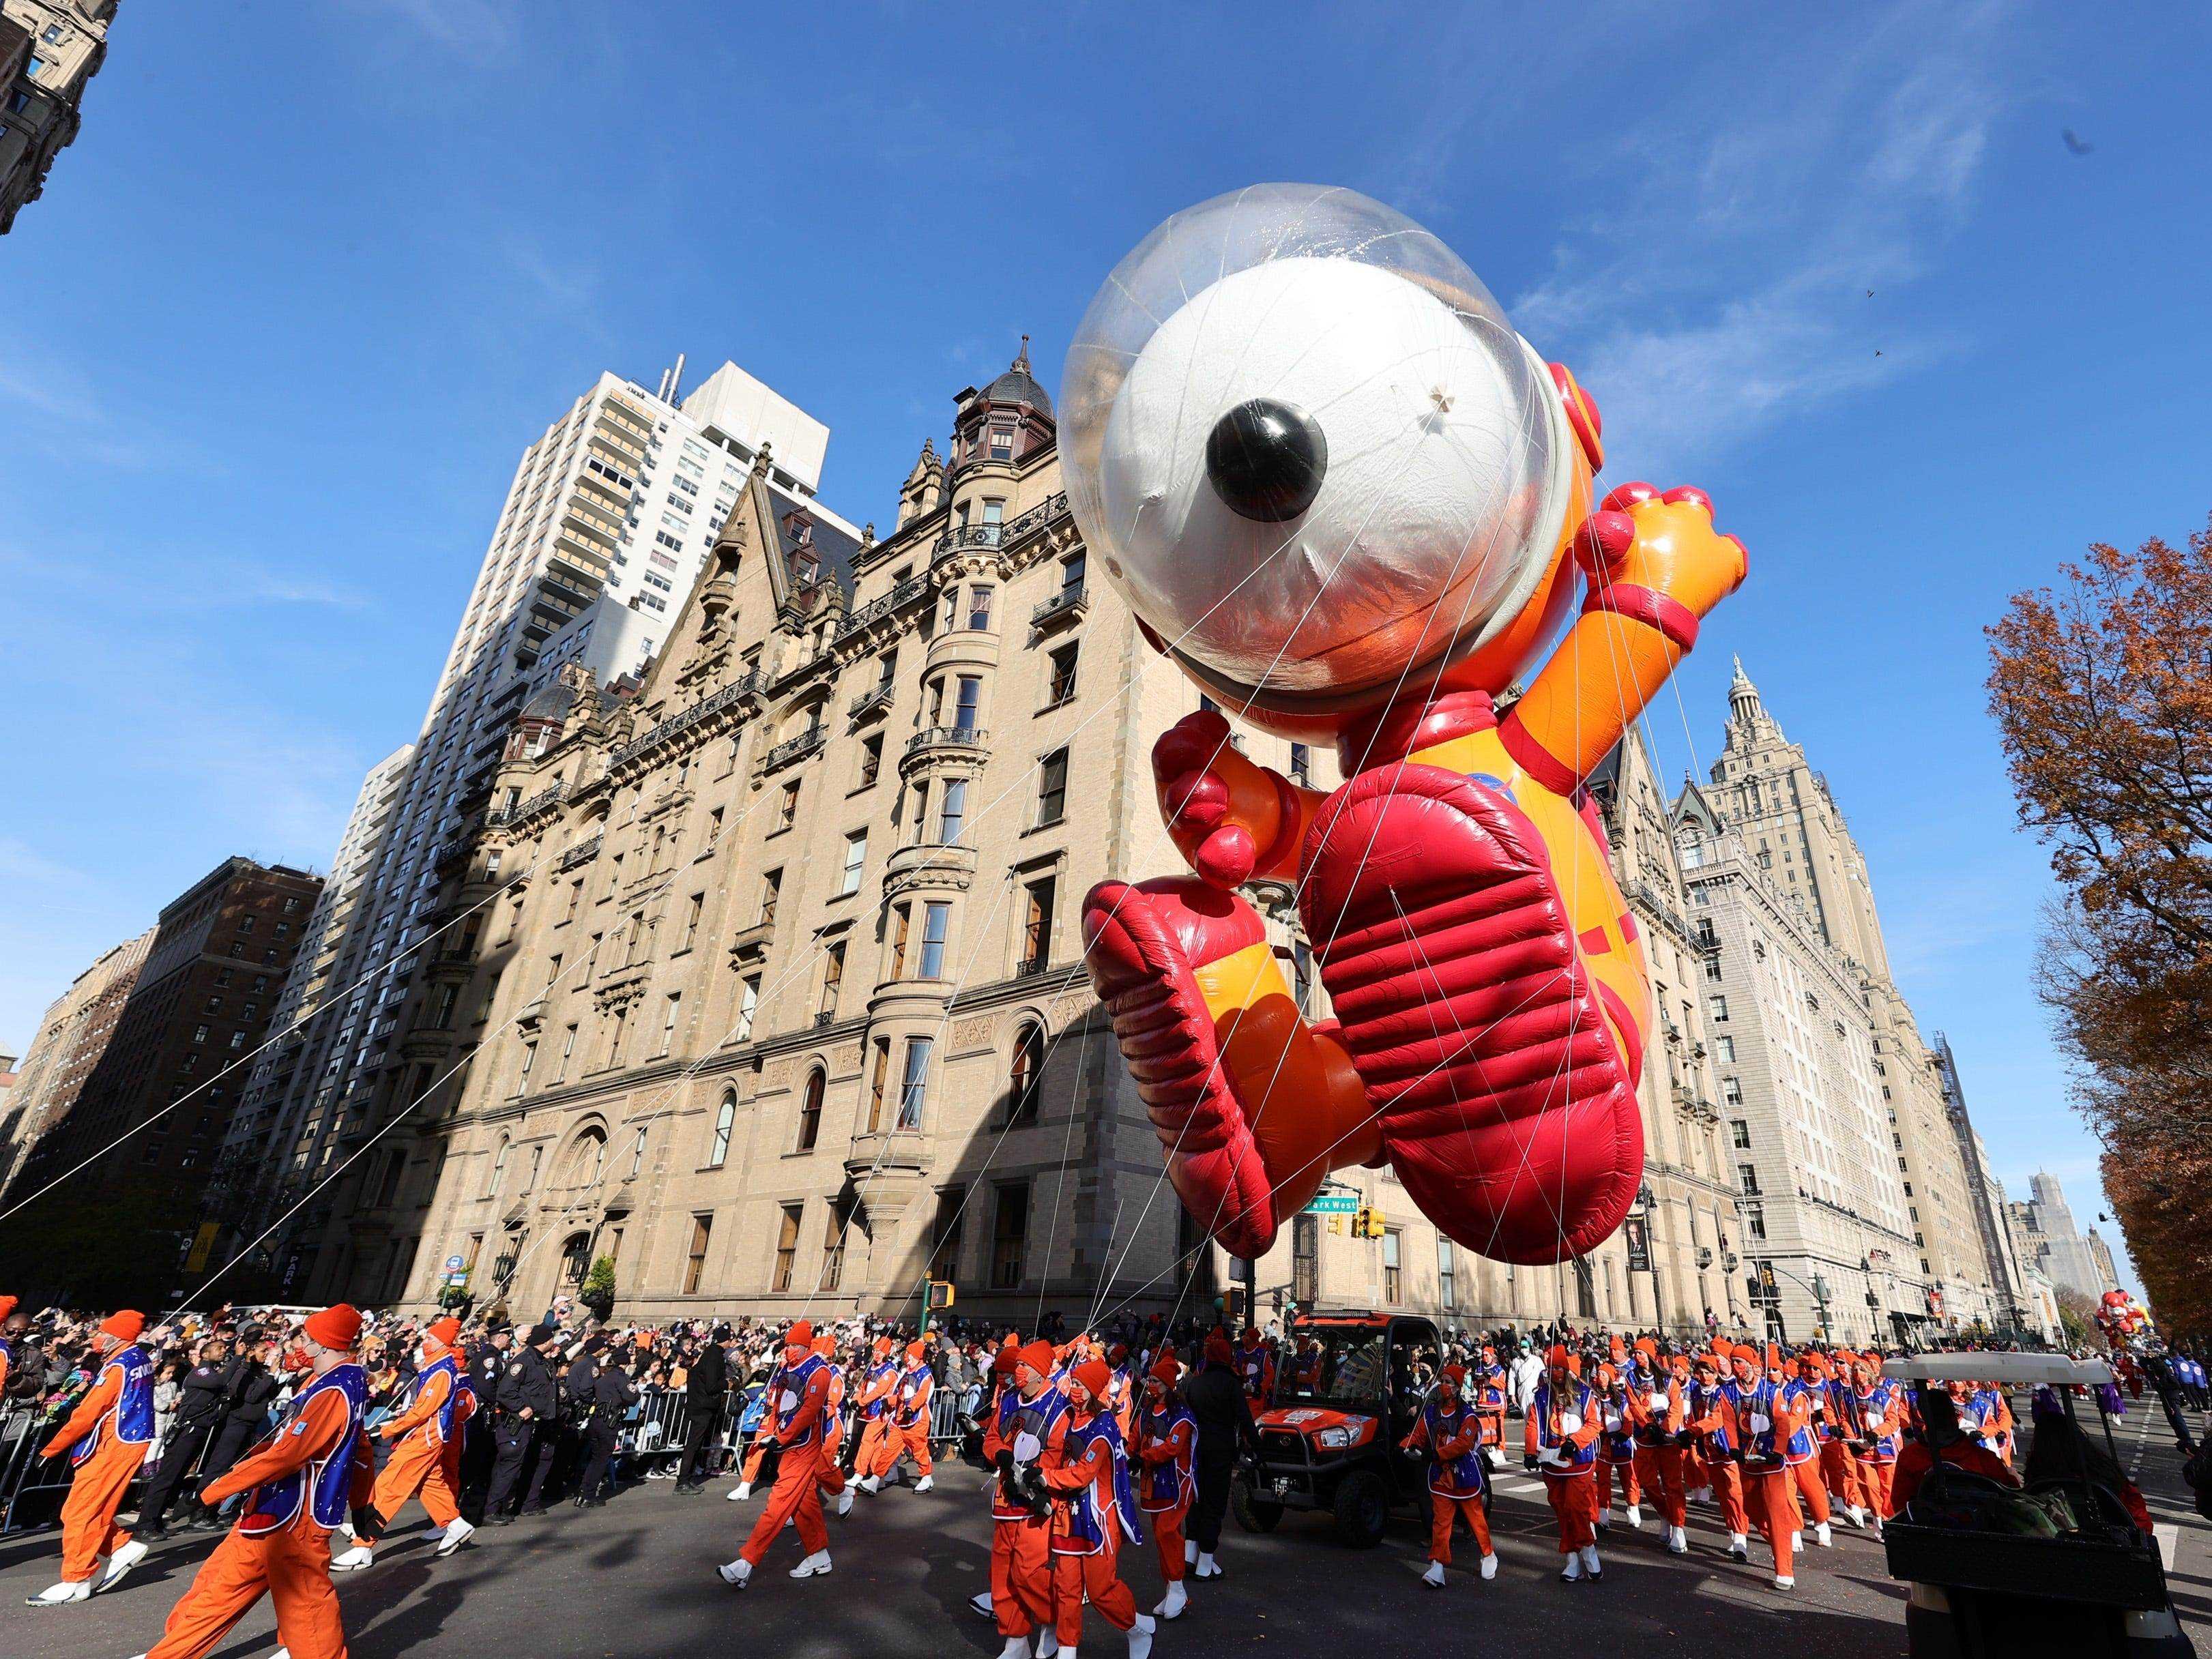 Der Snoopy-Ballon schwebt über der Parade.